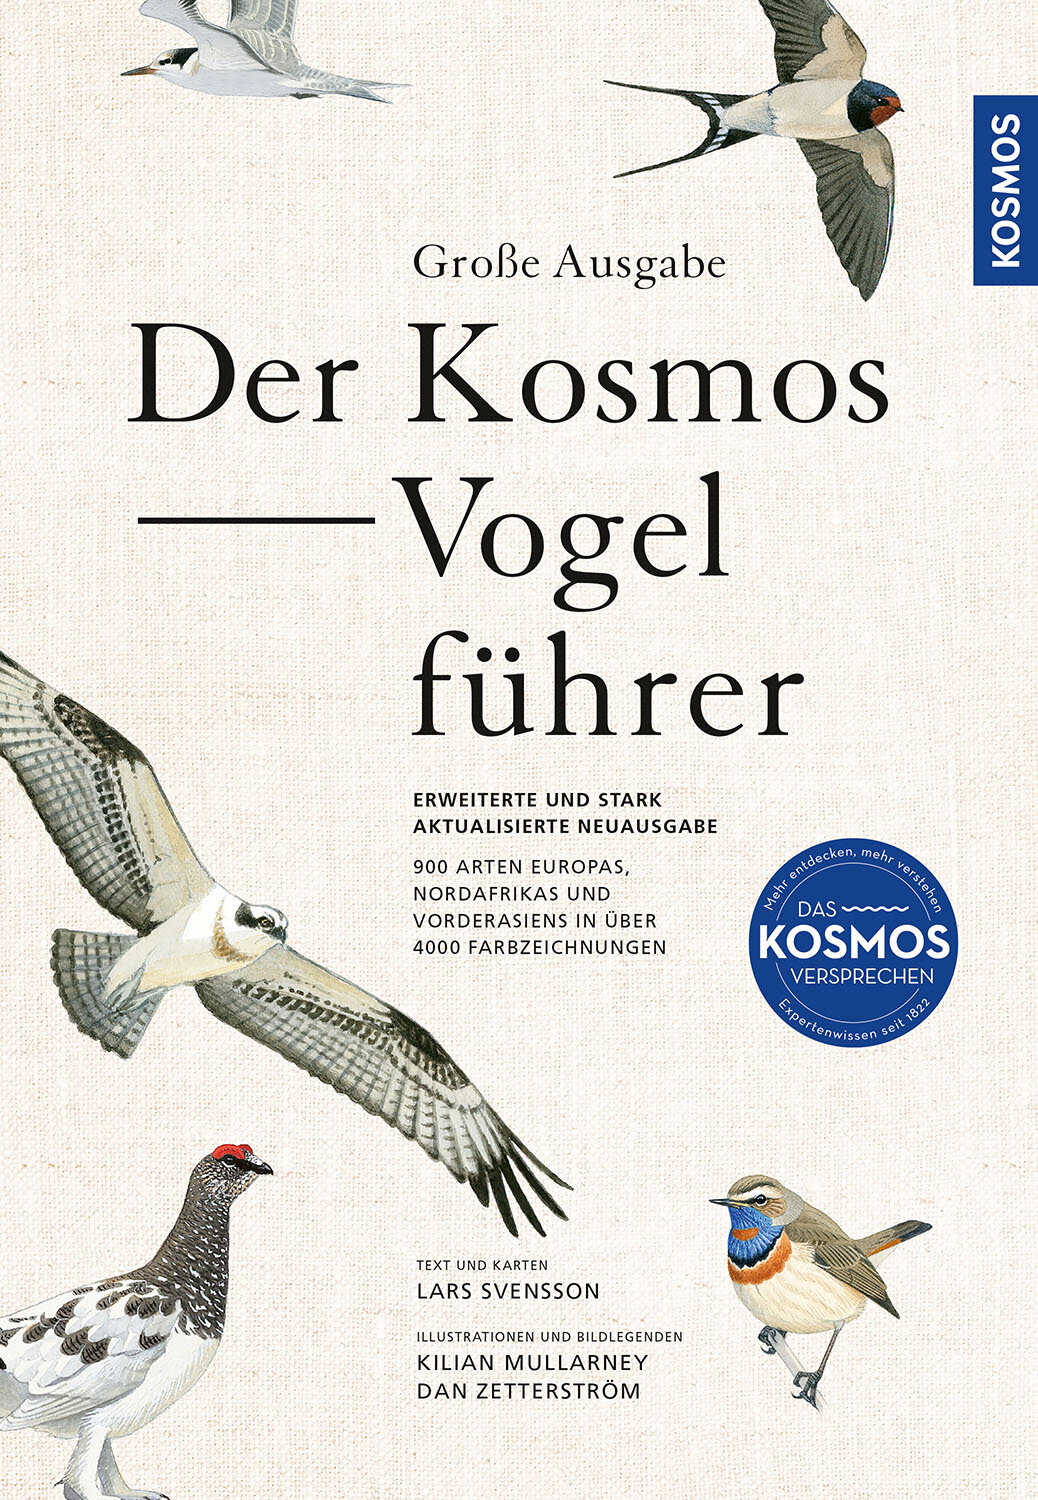 Der Kosmos-Vogelführer. Große Ausgabe